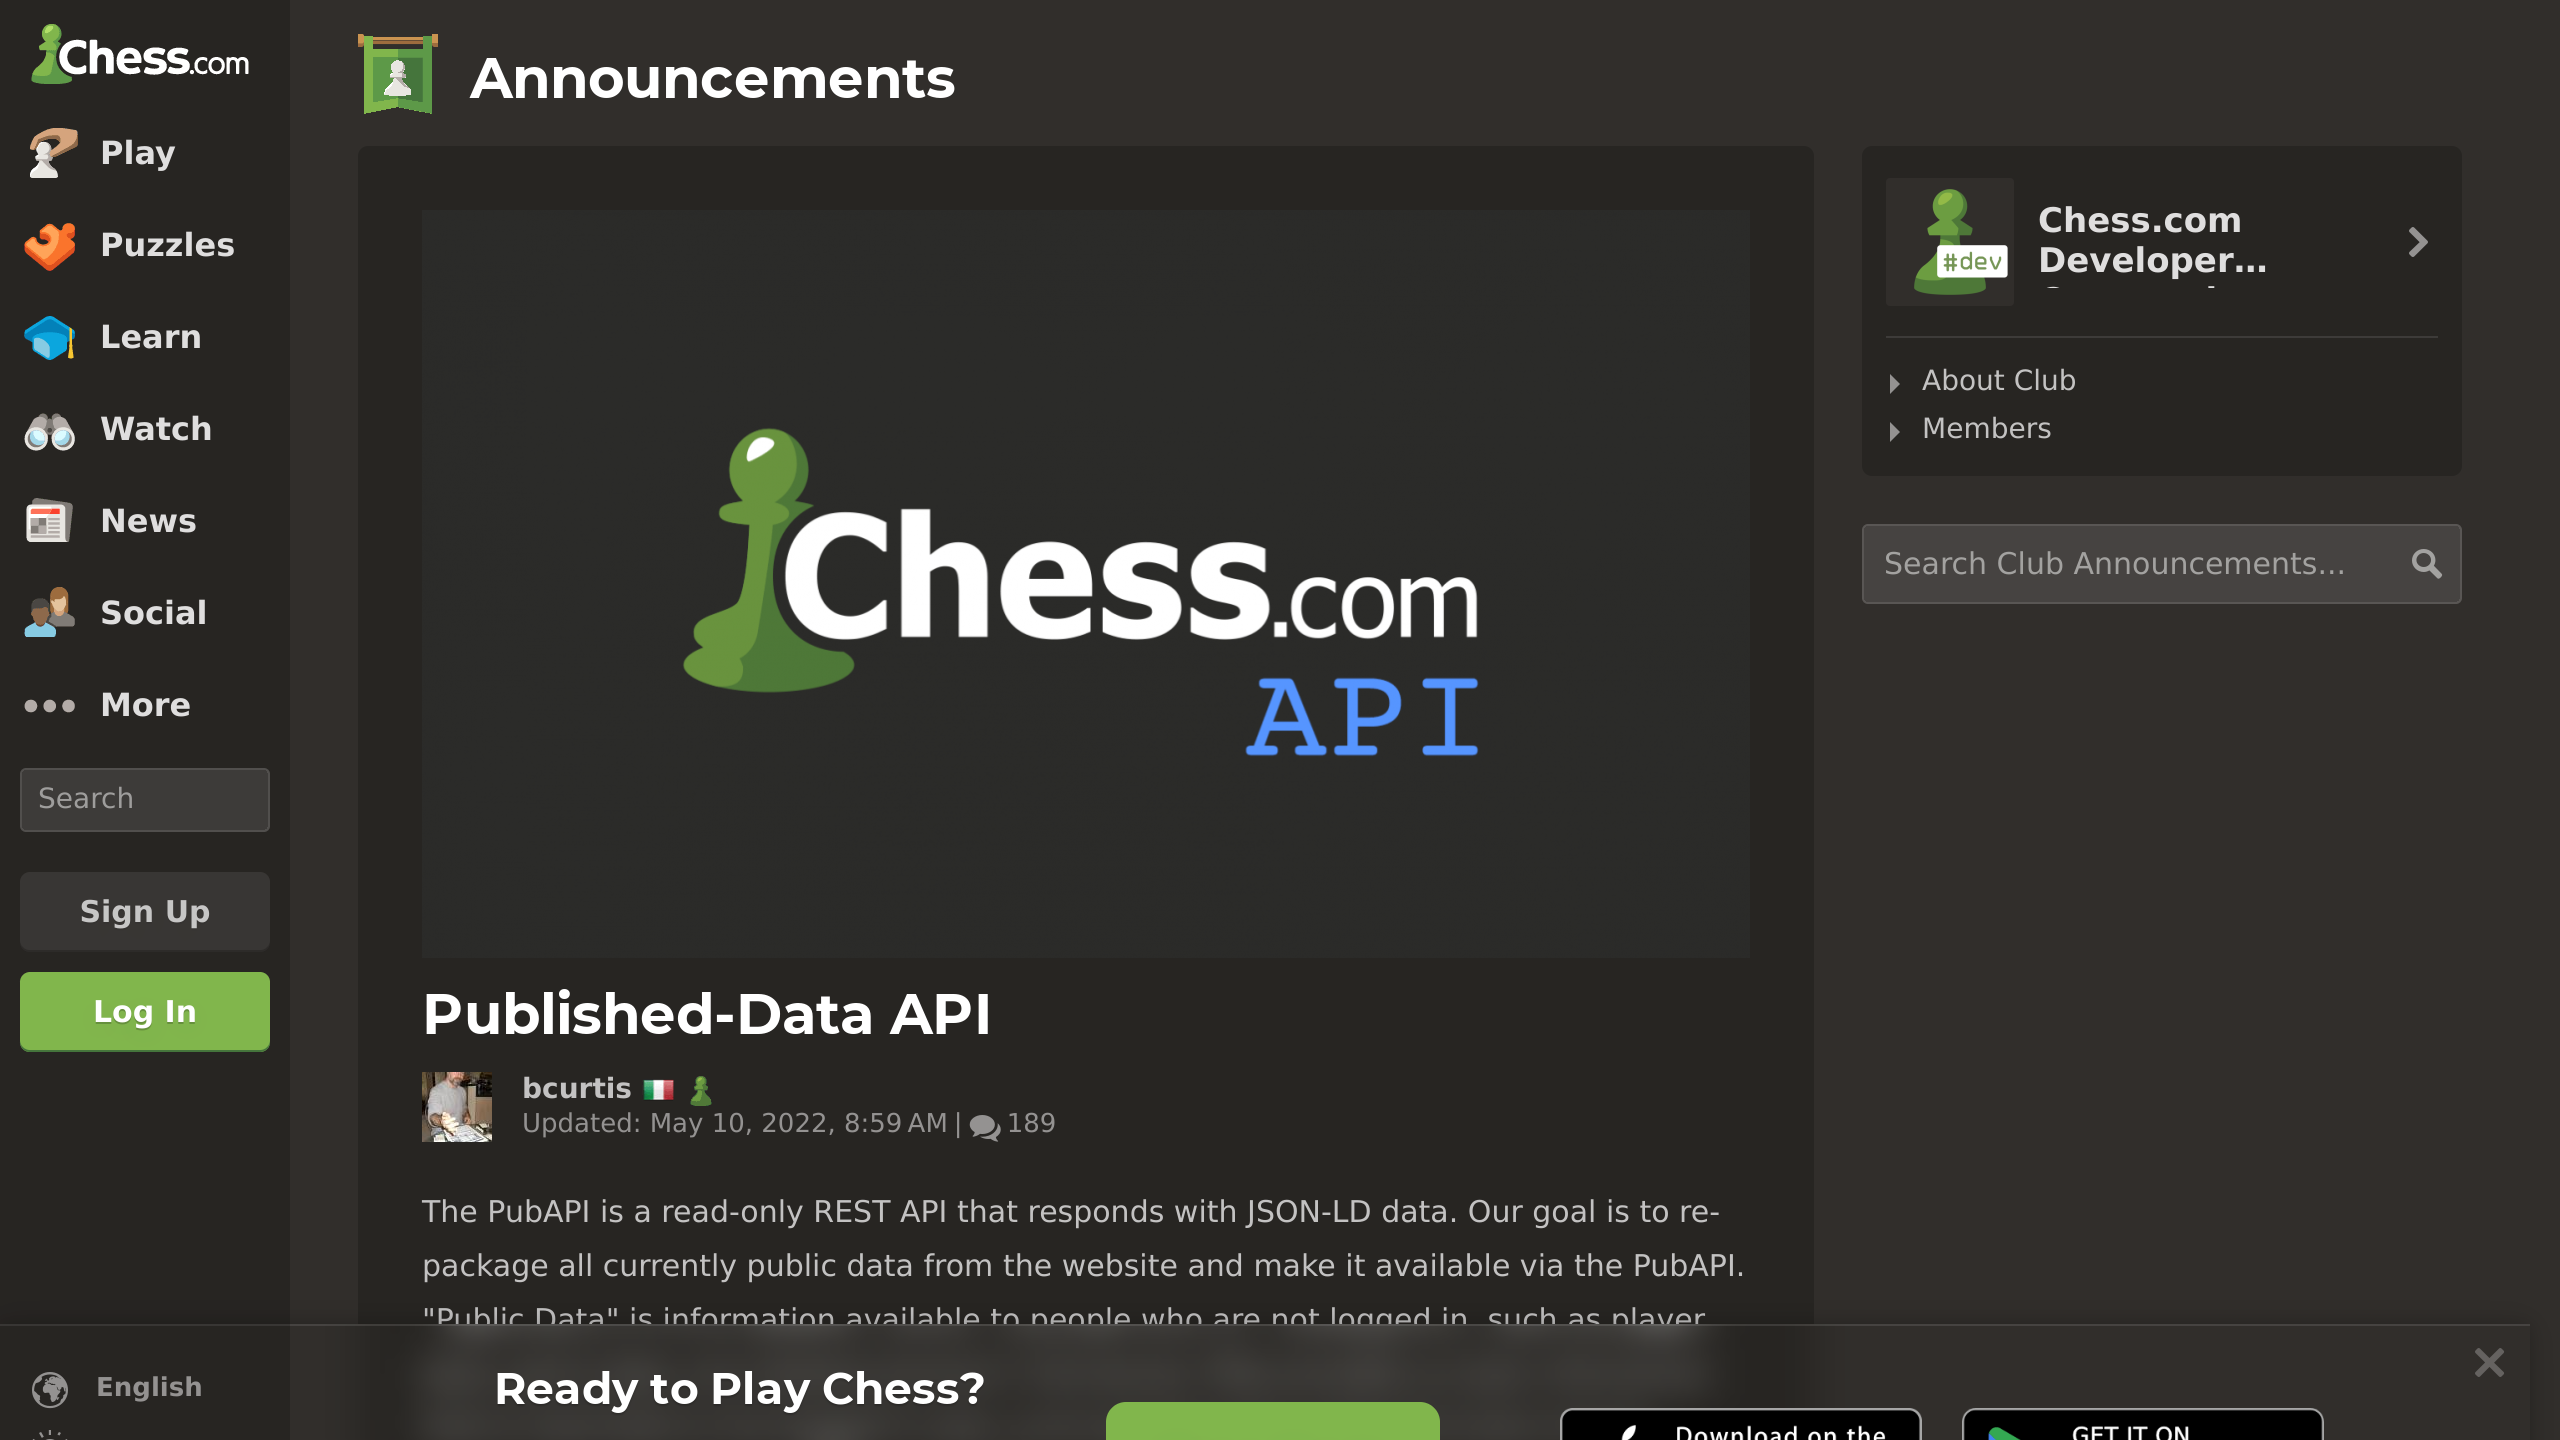 Chess.com's website screenshot